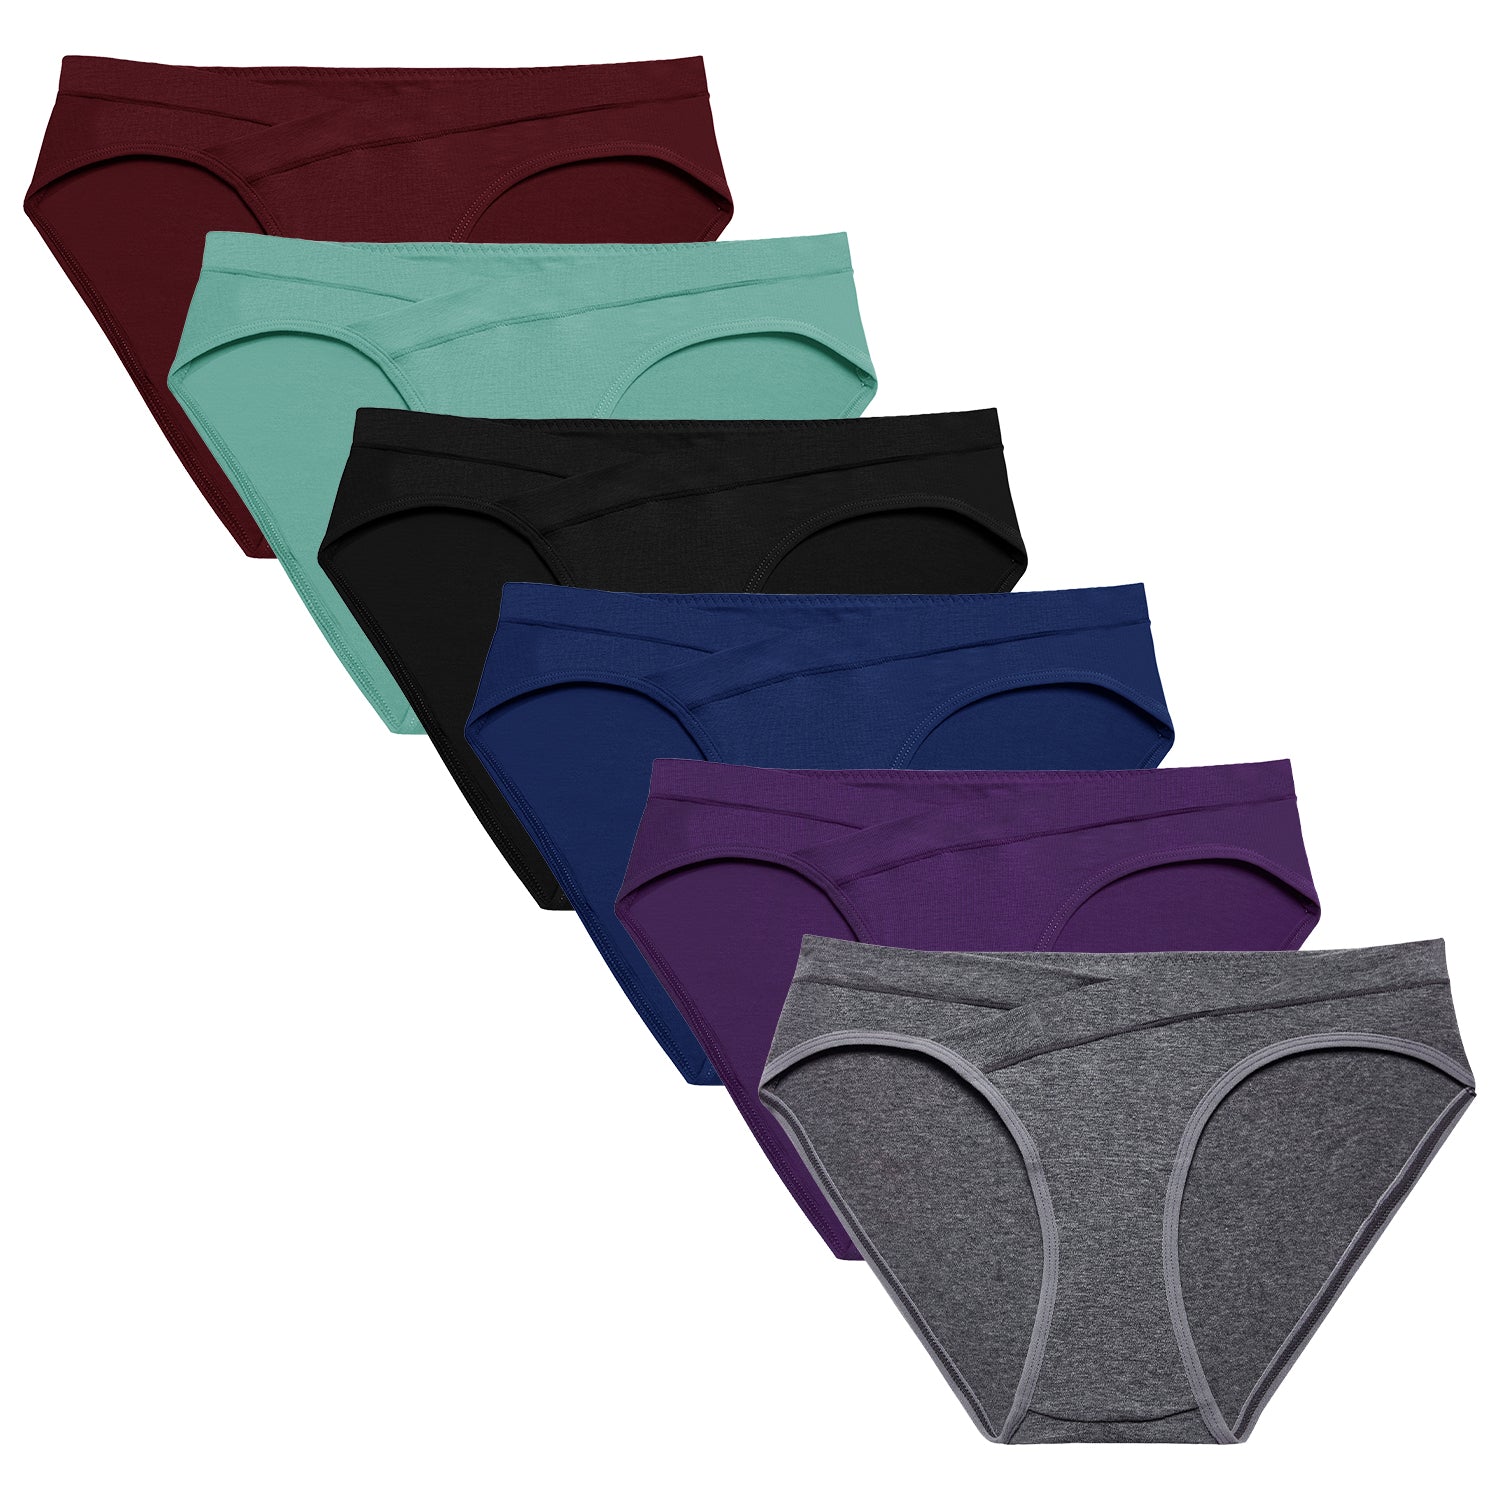 Molasus 5pcs Women's Cotton Panties Soft Color Matching Underwear